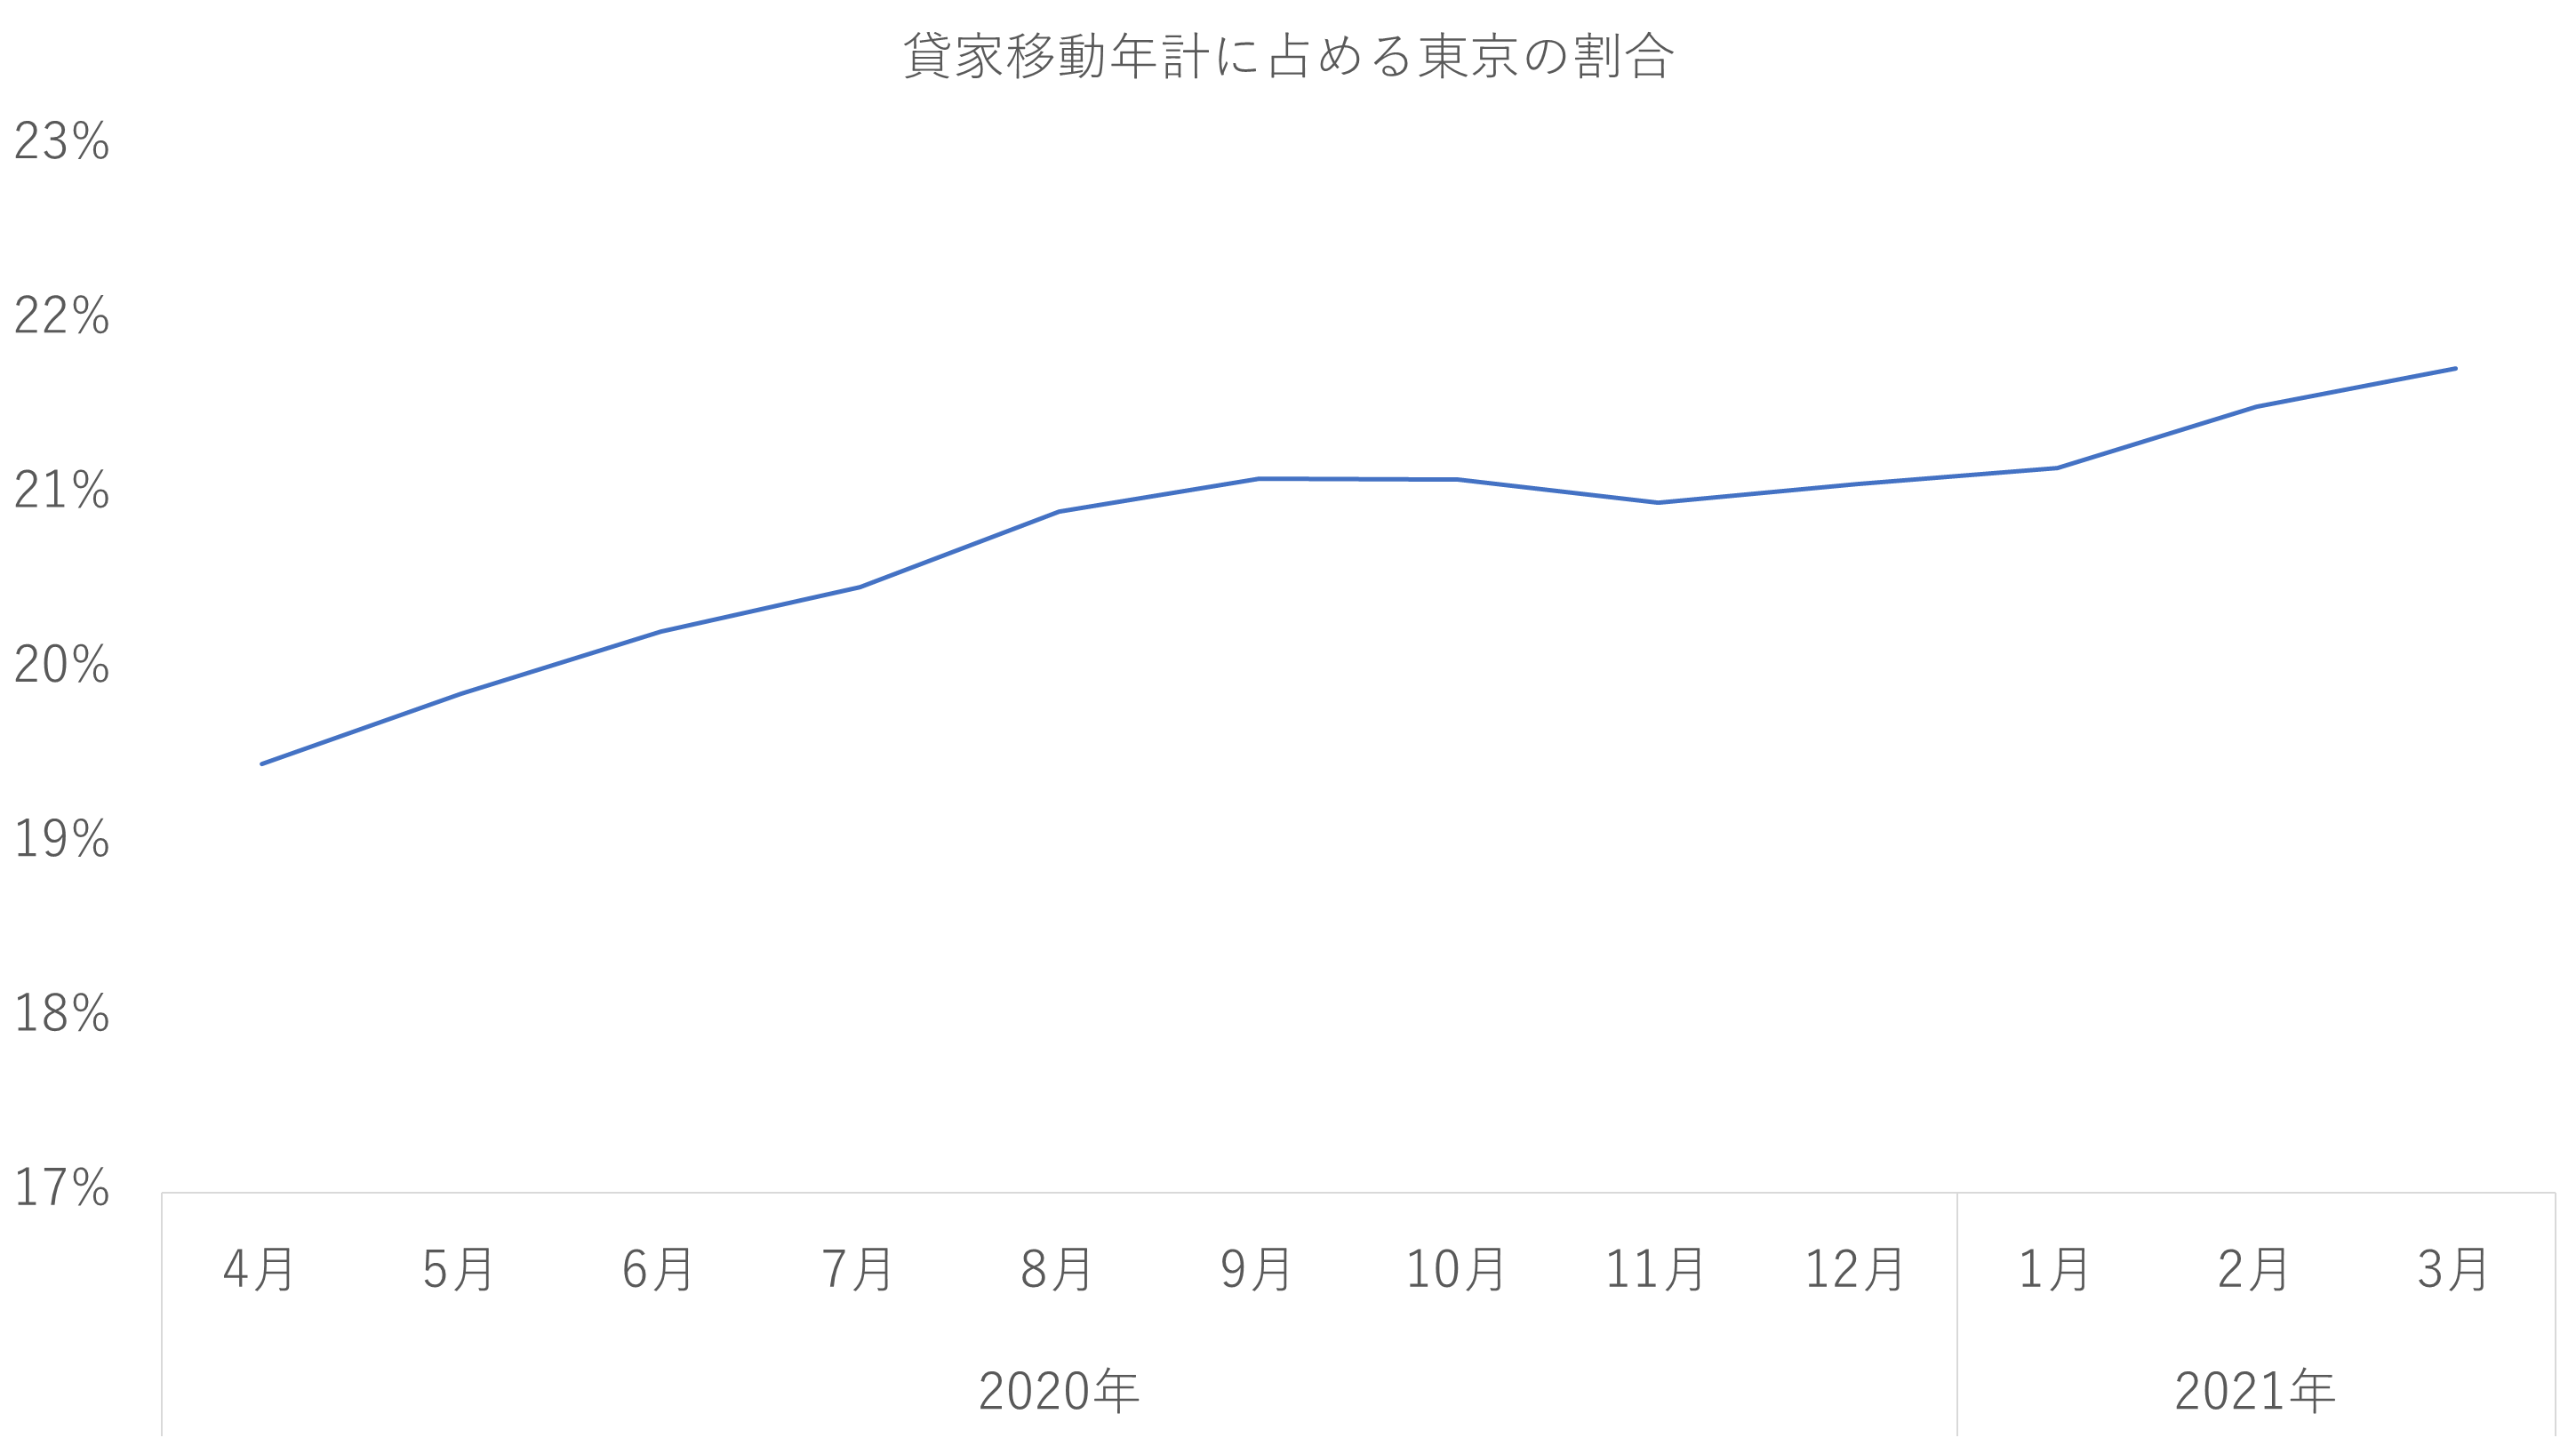 貸家移動年計に占める東京の割合